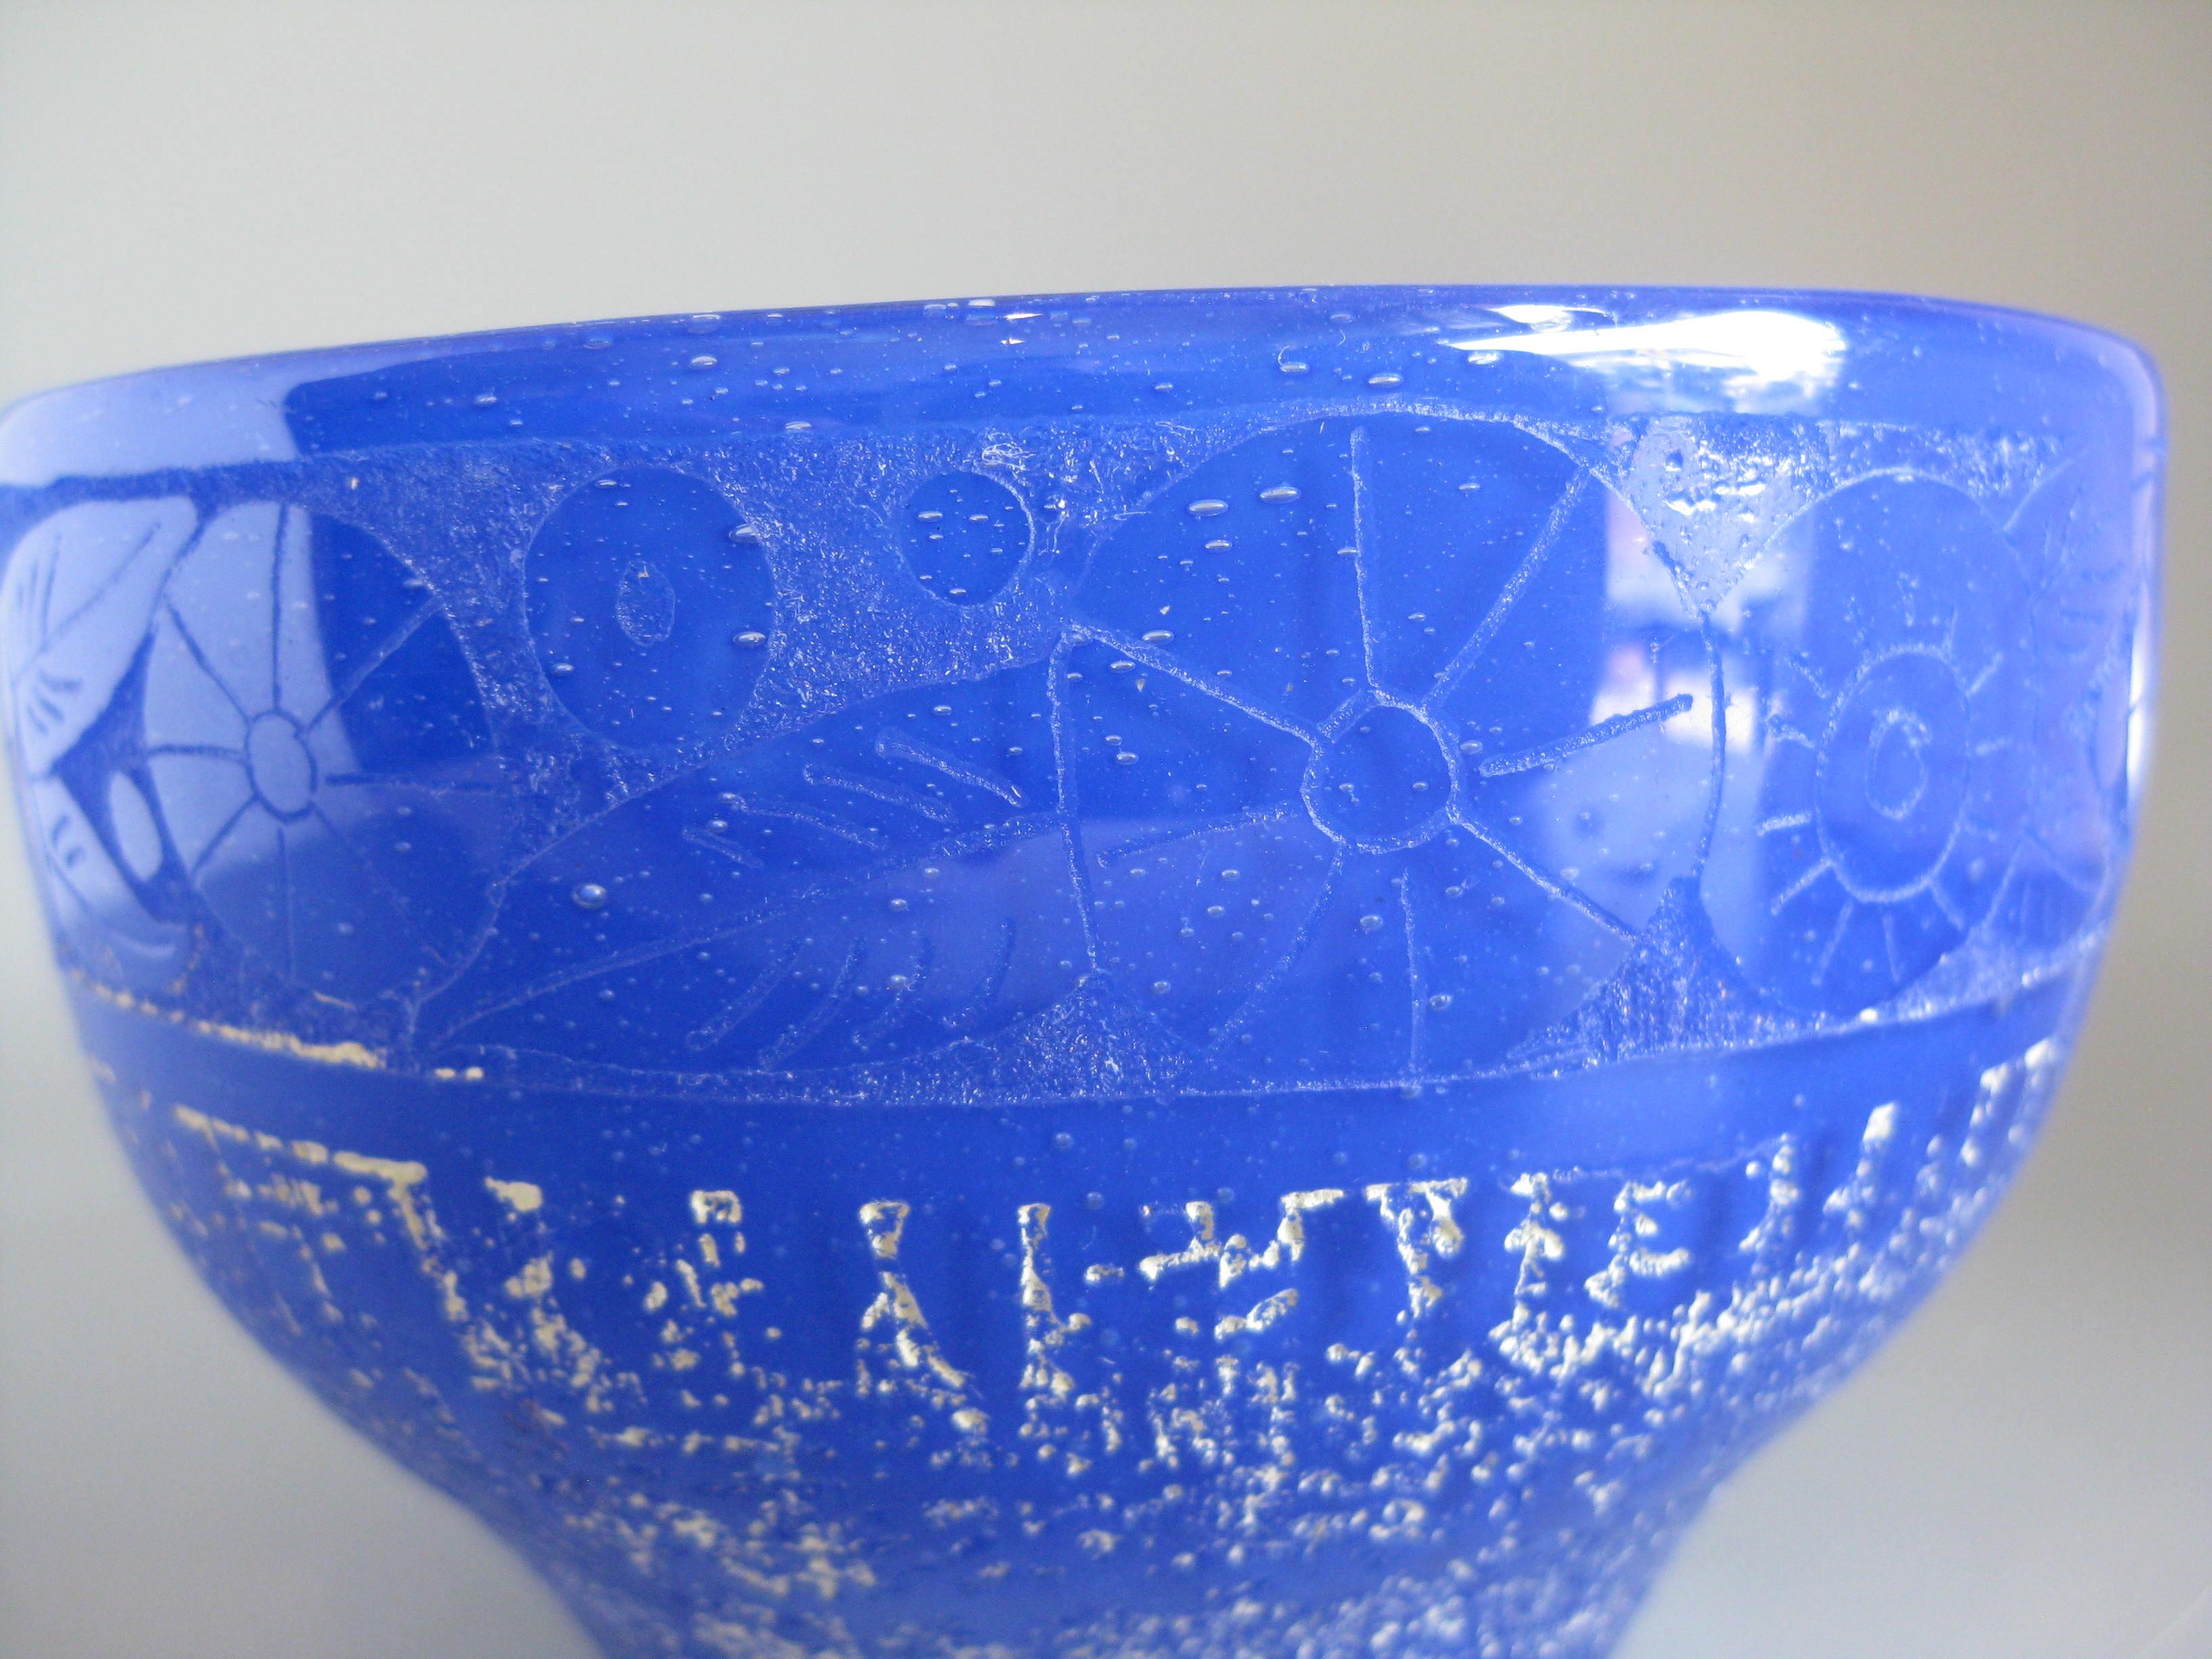 Feine Art Deco Daum Kunstglas Säure geätzt blau Vase / Schale, ca. 1920's. Sie wurde in Nancy, Frankreich, hergestellt und ist am unteren Rand signiert. Mit dem Zeichen 